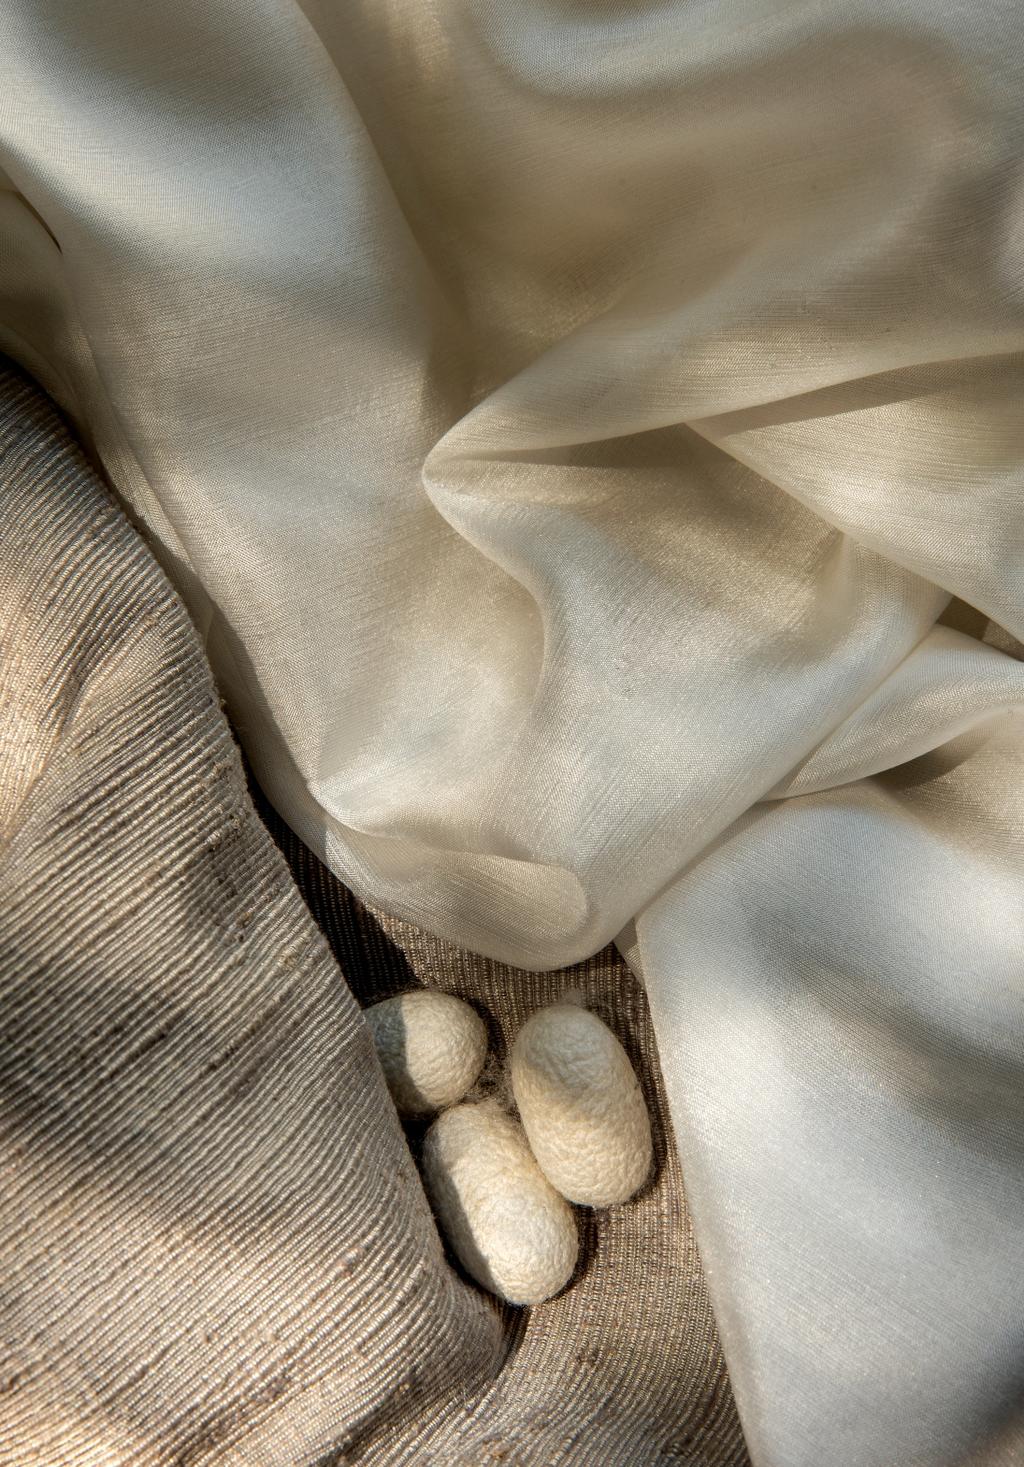 SEDA Fibra sempre associada à so sticação e à nobreza, a seda possui um toque que acaricia e nos traz para o aconchego do ambiente.